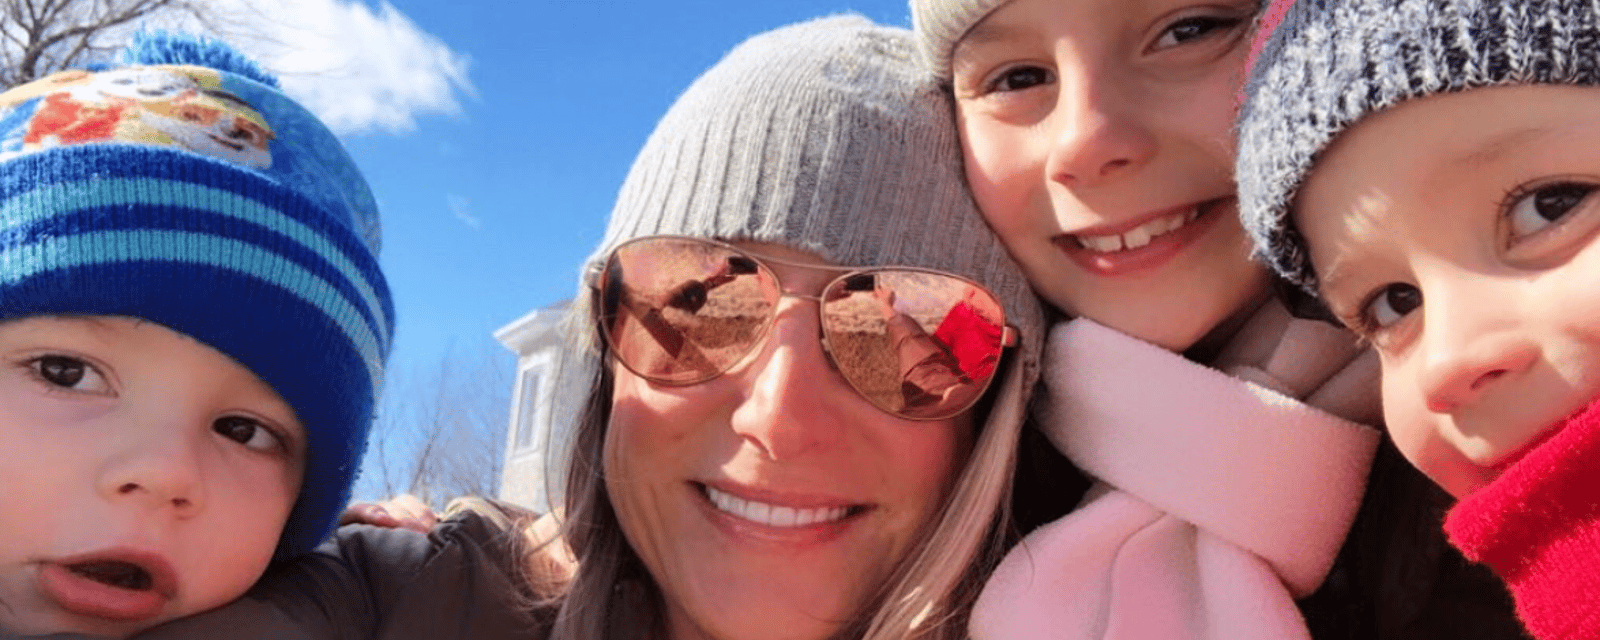 Mahée Paiement souligne une importante étape dans la vie de sa fille et elle publie une photo de ses enfants